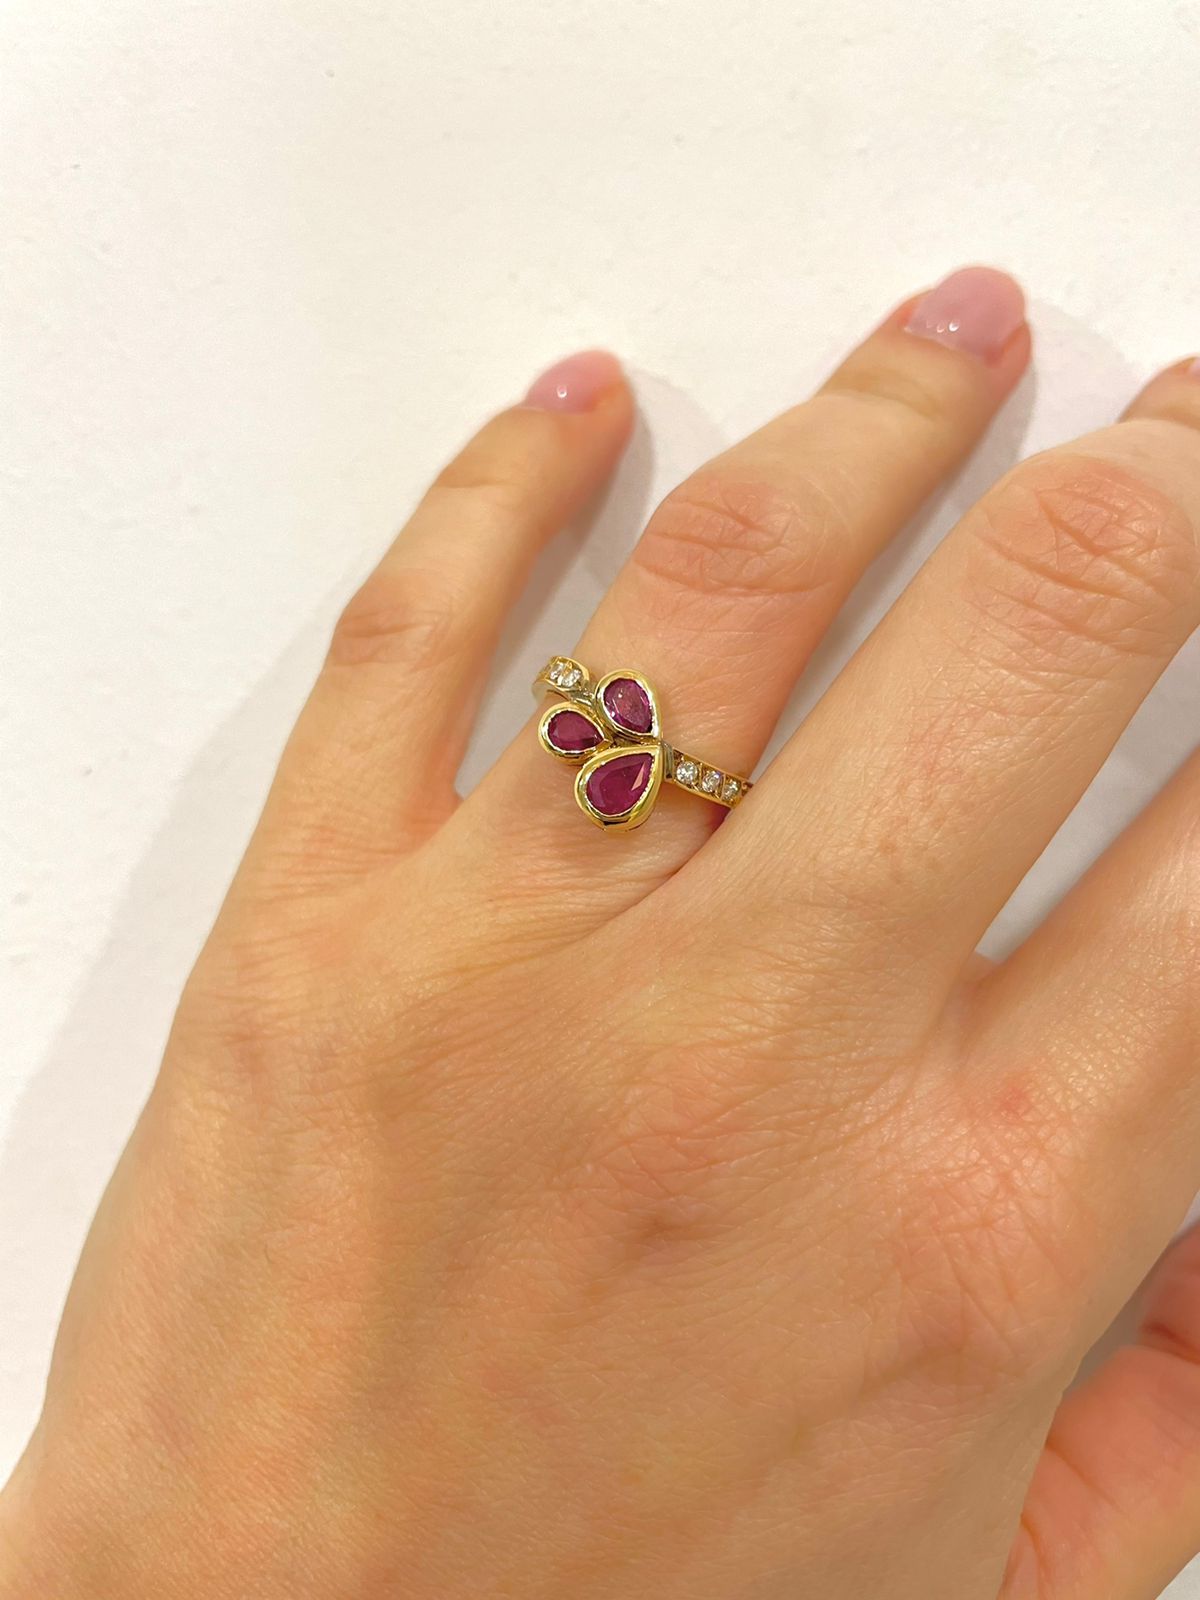 Μοντέρνο δαχτυλίδι από κίτρινο χρυσό Κ18 με τρία drop-shape σκούρα ροζ ζαφείρια και στρογγυλά διαμάντια μπριγιάν.